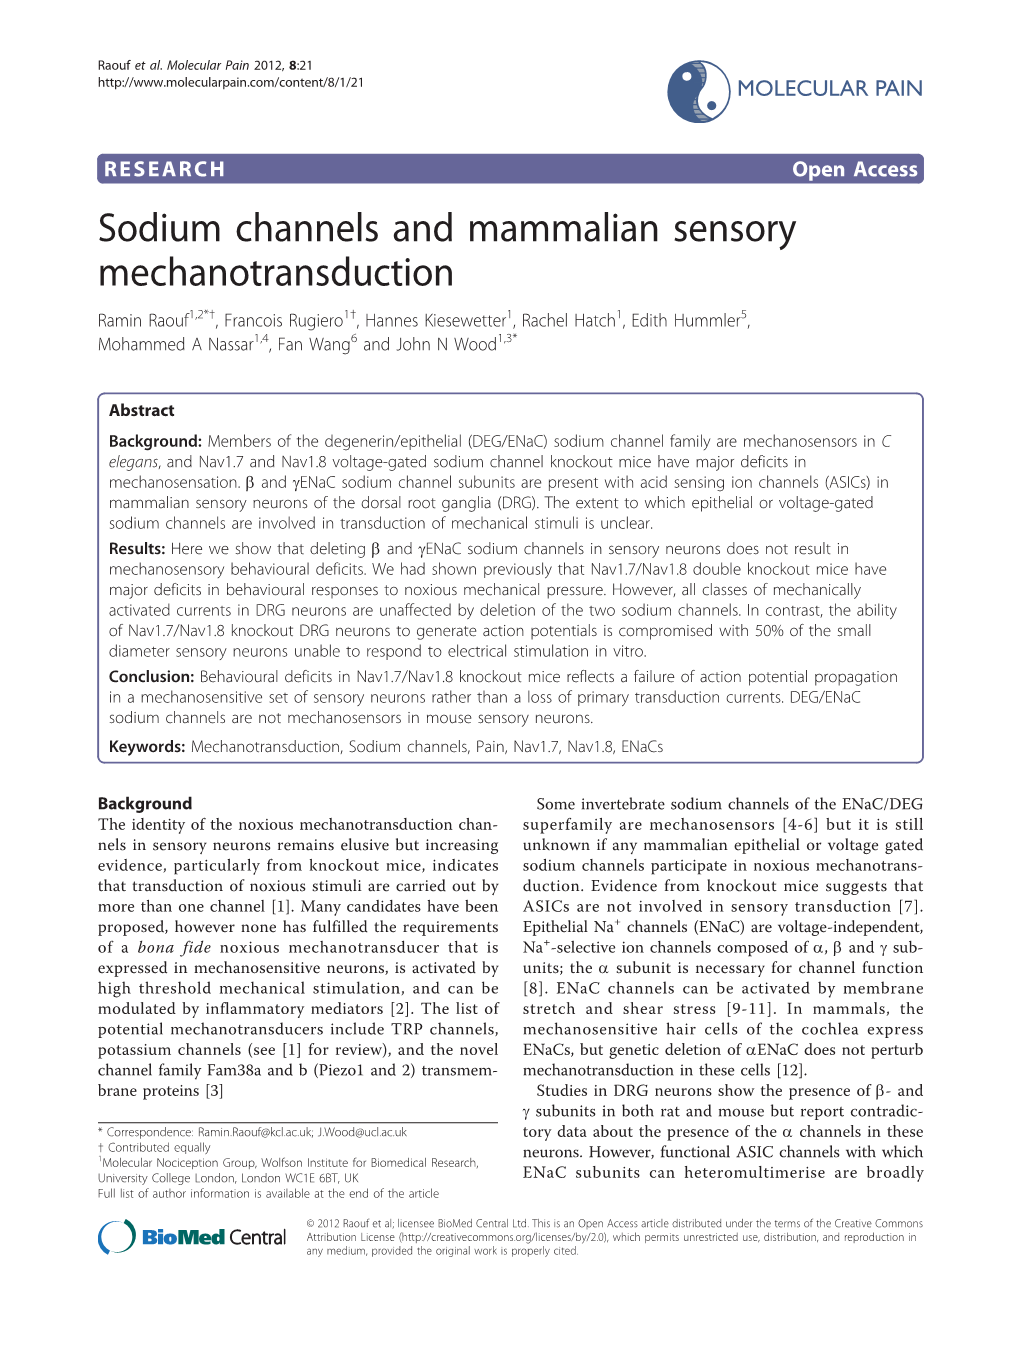 Sodium Channels and Mammalian Sensory Mechanotransduction